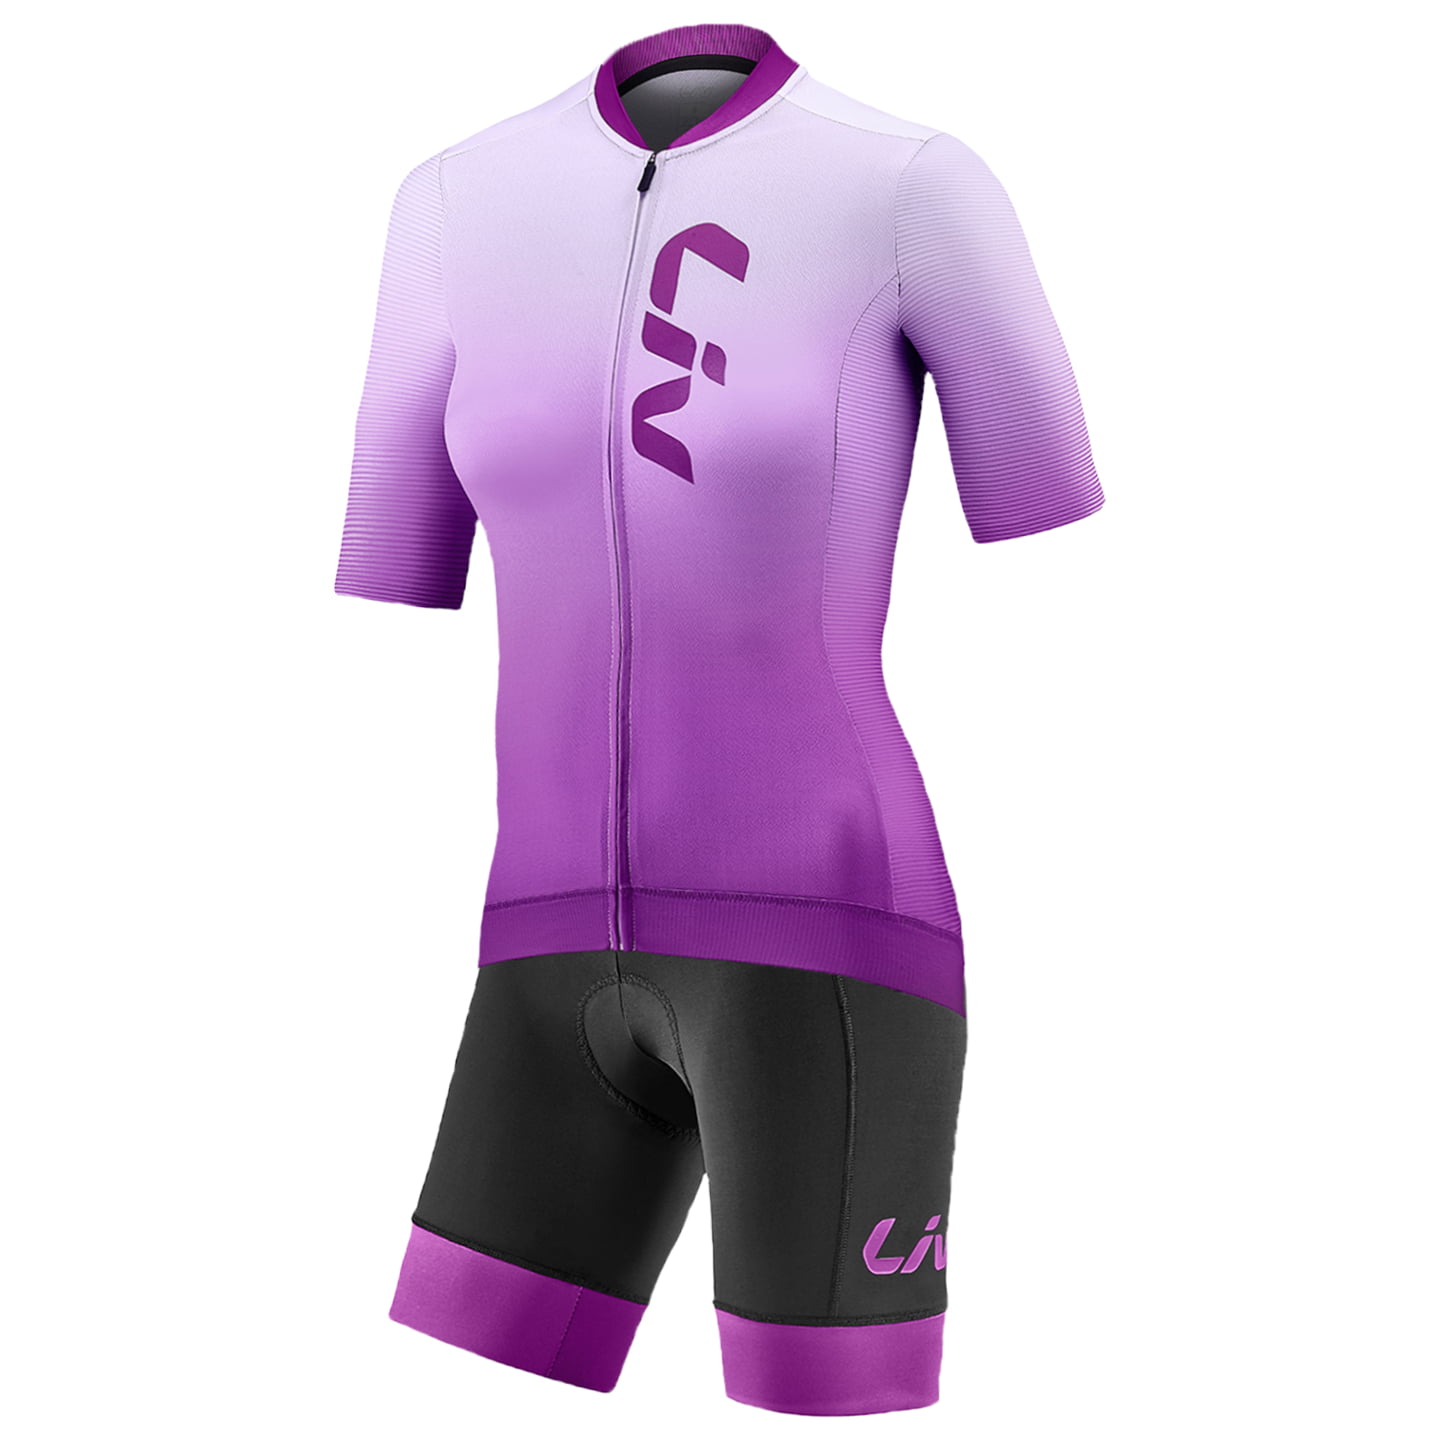 LIV Race Day Women’s Set (cycling jersey + cycling shorts) Women’s Set (2 pieces), Cycling clothing